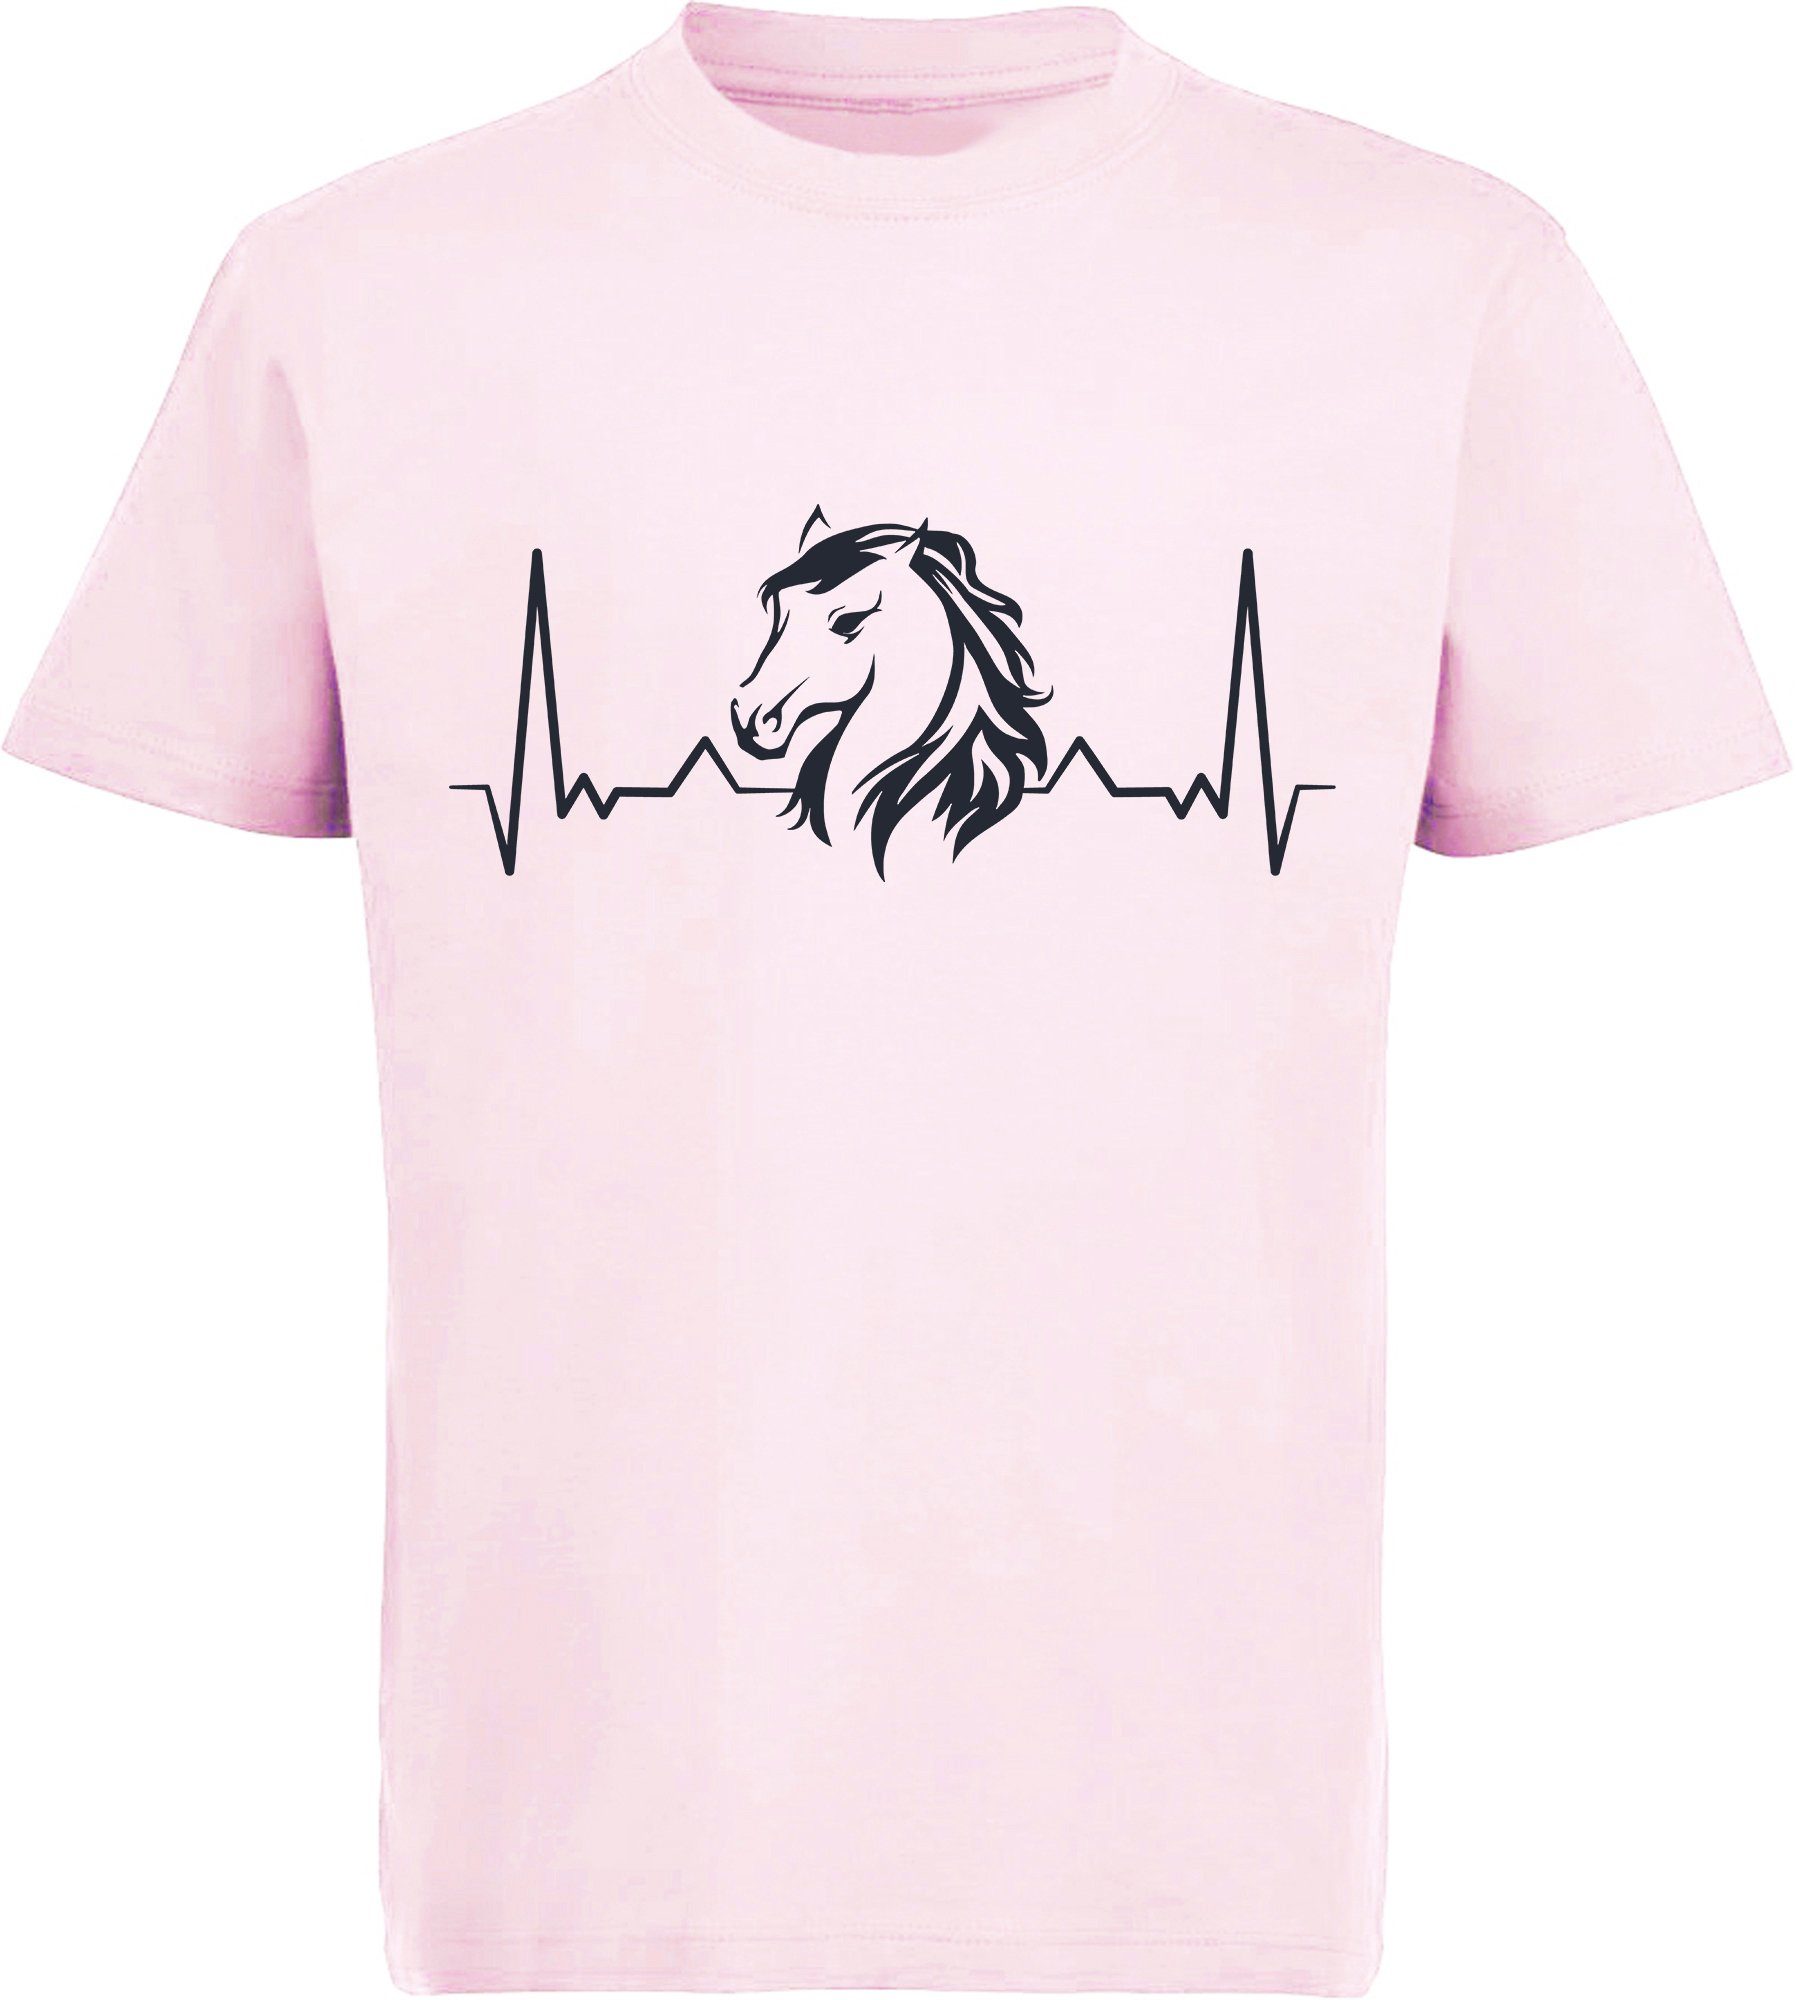 MyDesign24 Print-Shirt bedrucktes Mädchen T-Shirt Herzschlaglinie mit Pferdekopf Baumwollshirt mit Aufdruck, i143 rosa